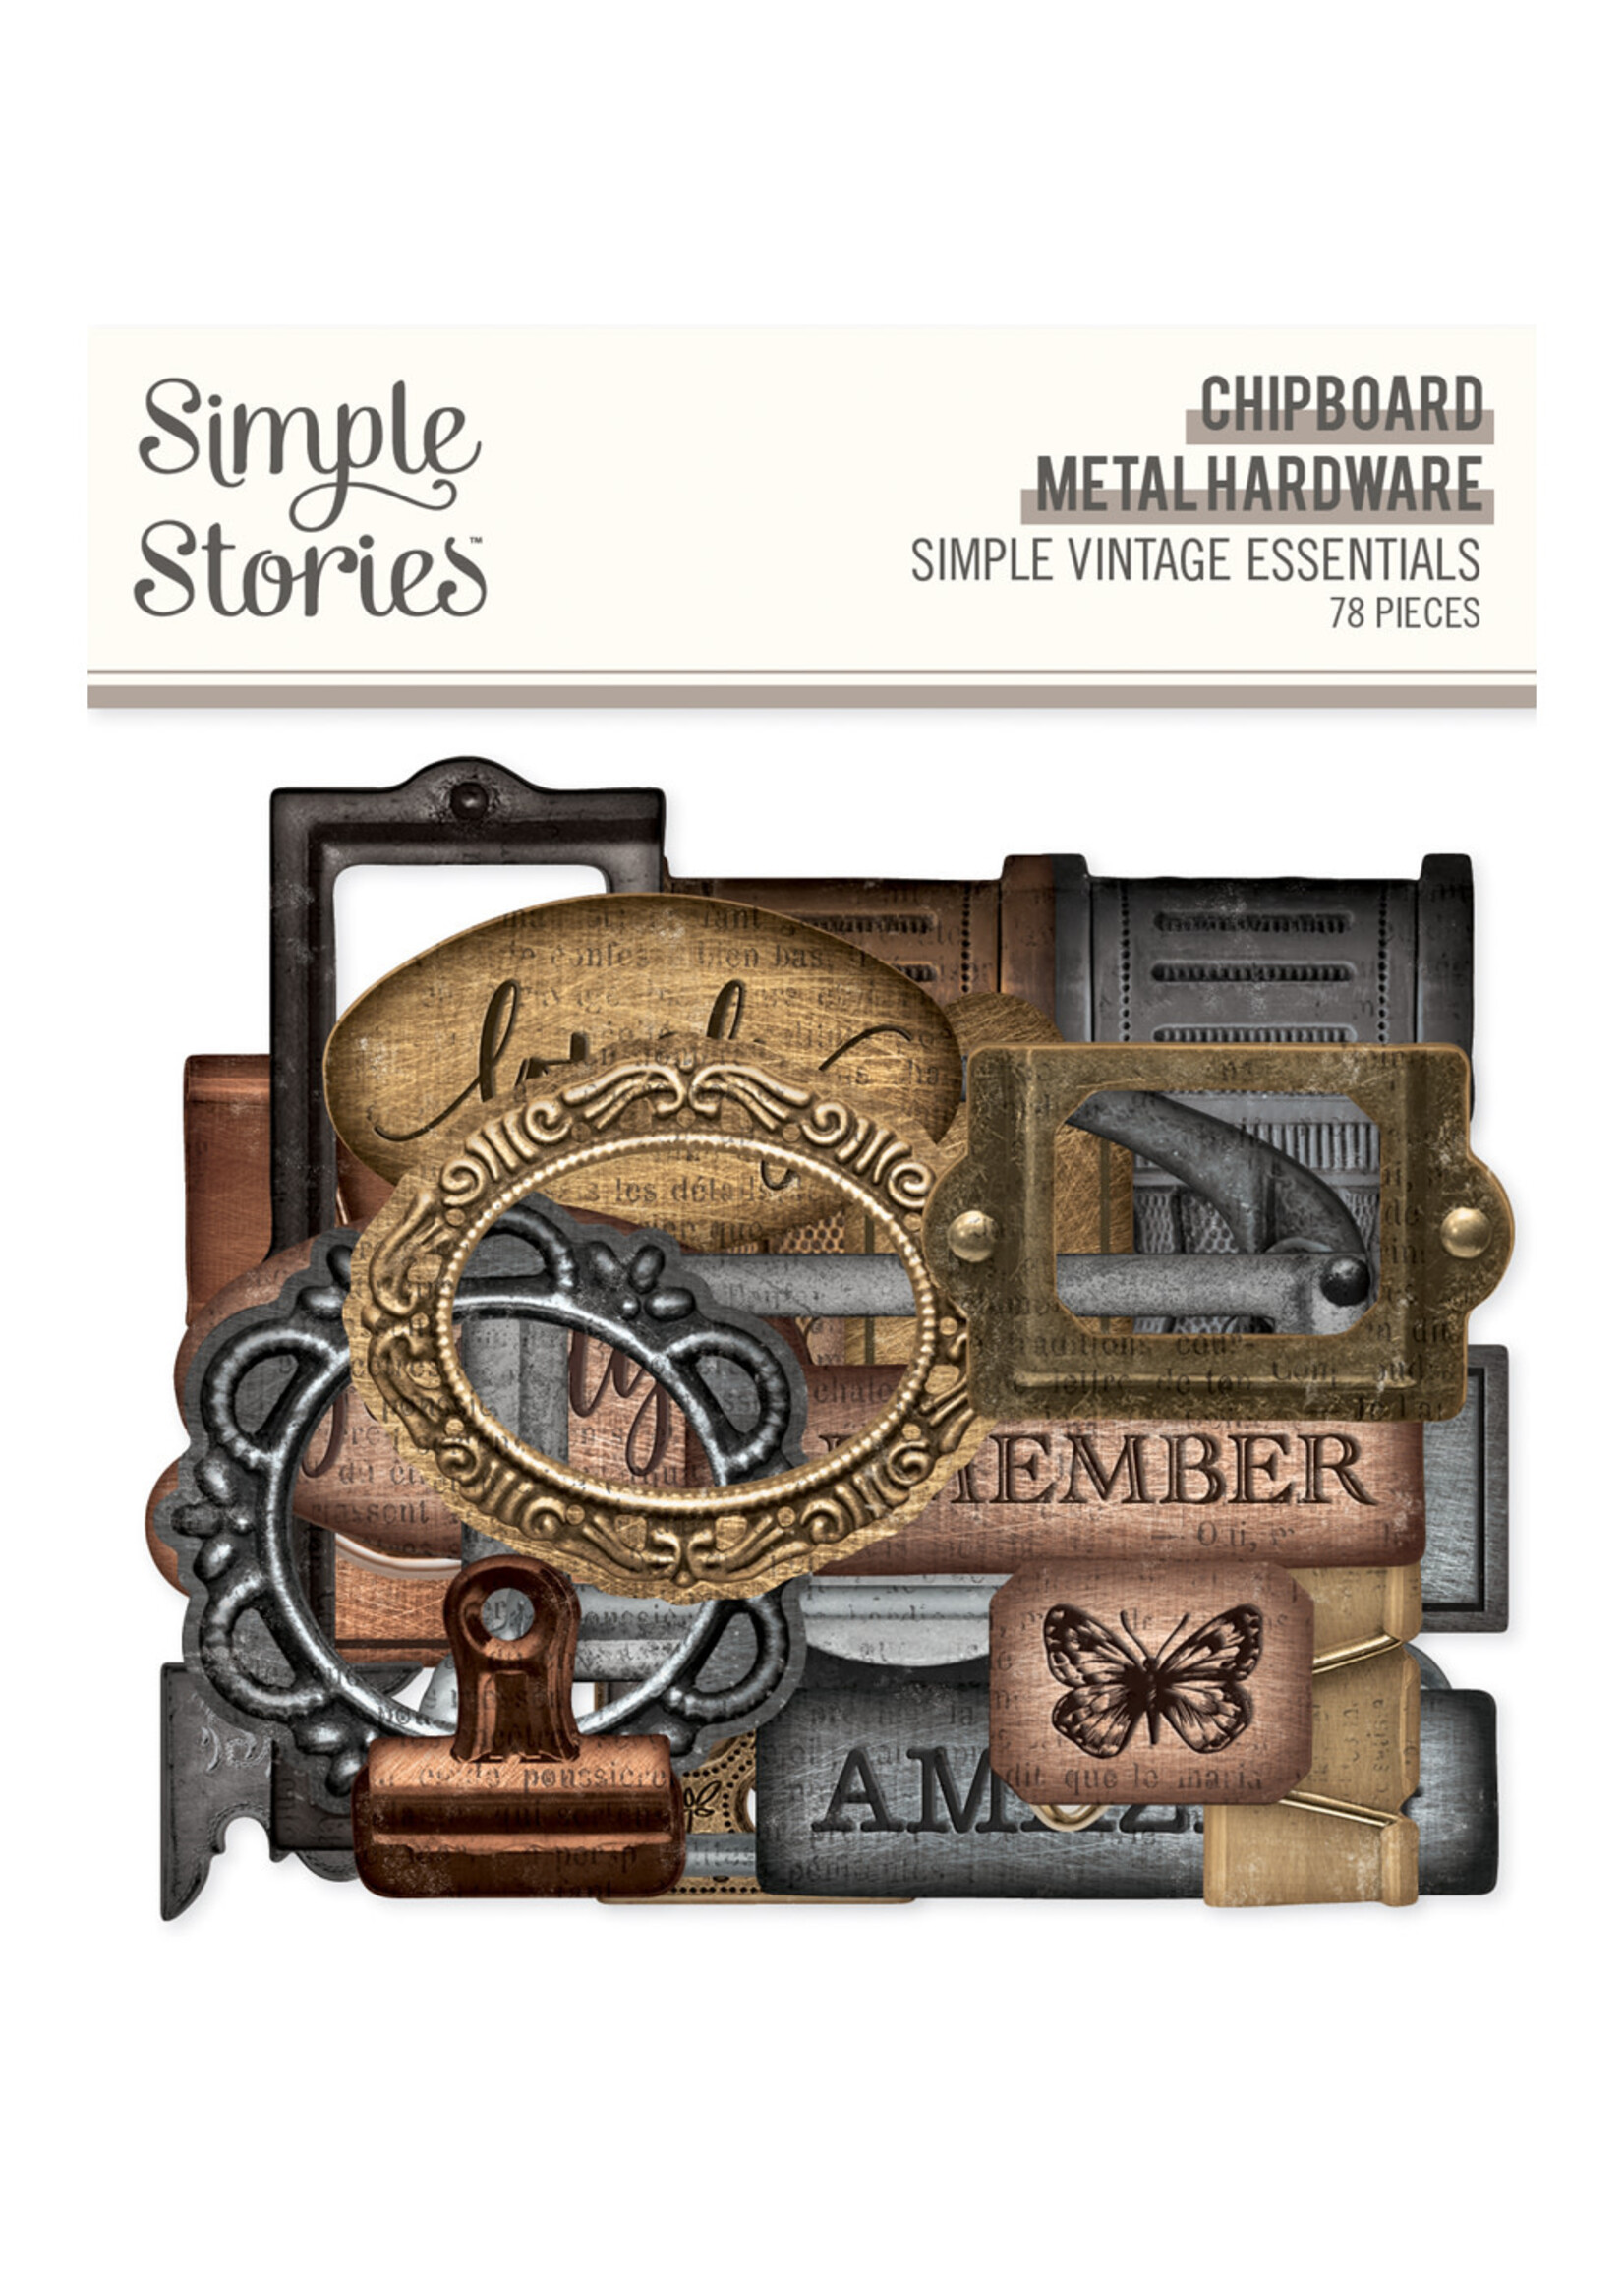 Simple Stories Simple Vintage Essentials  - Chipboard Metal Hardware